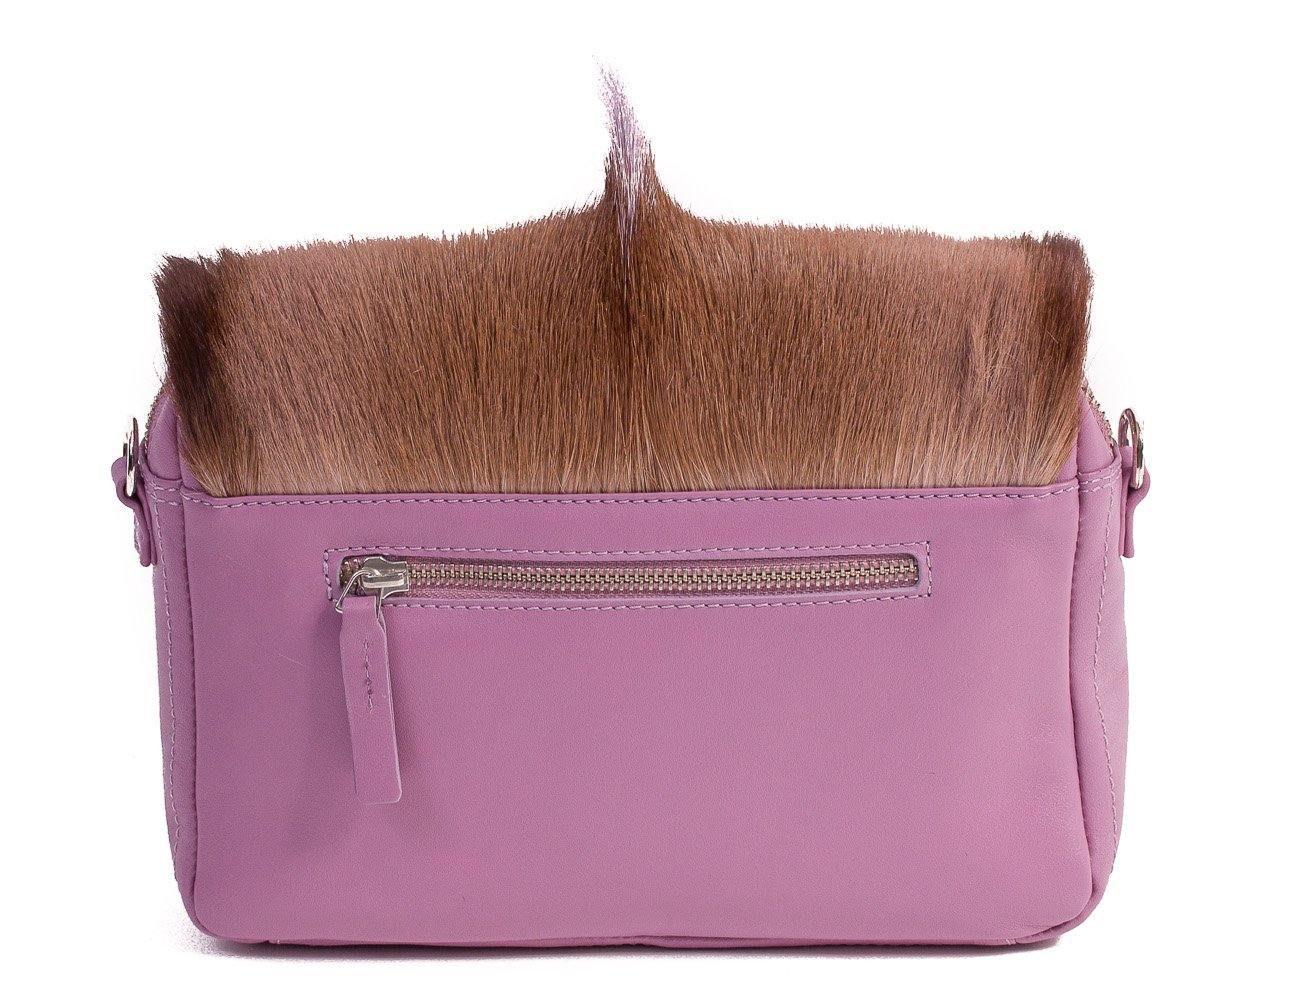 sherene melinda springbok hair-on-hide lavender leather shoulder bag Fan back